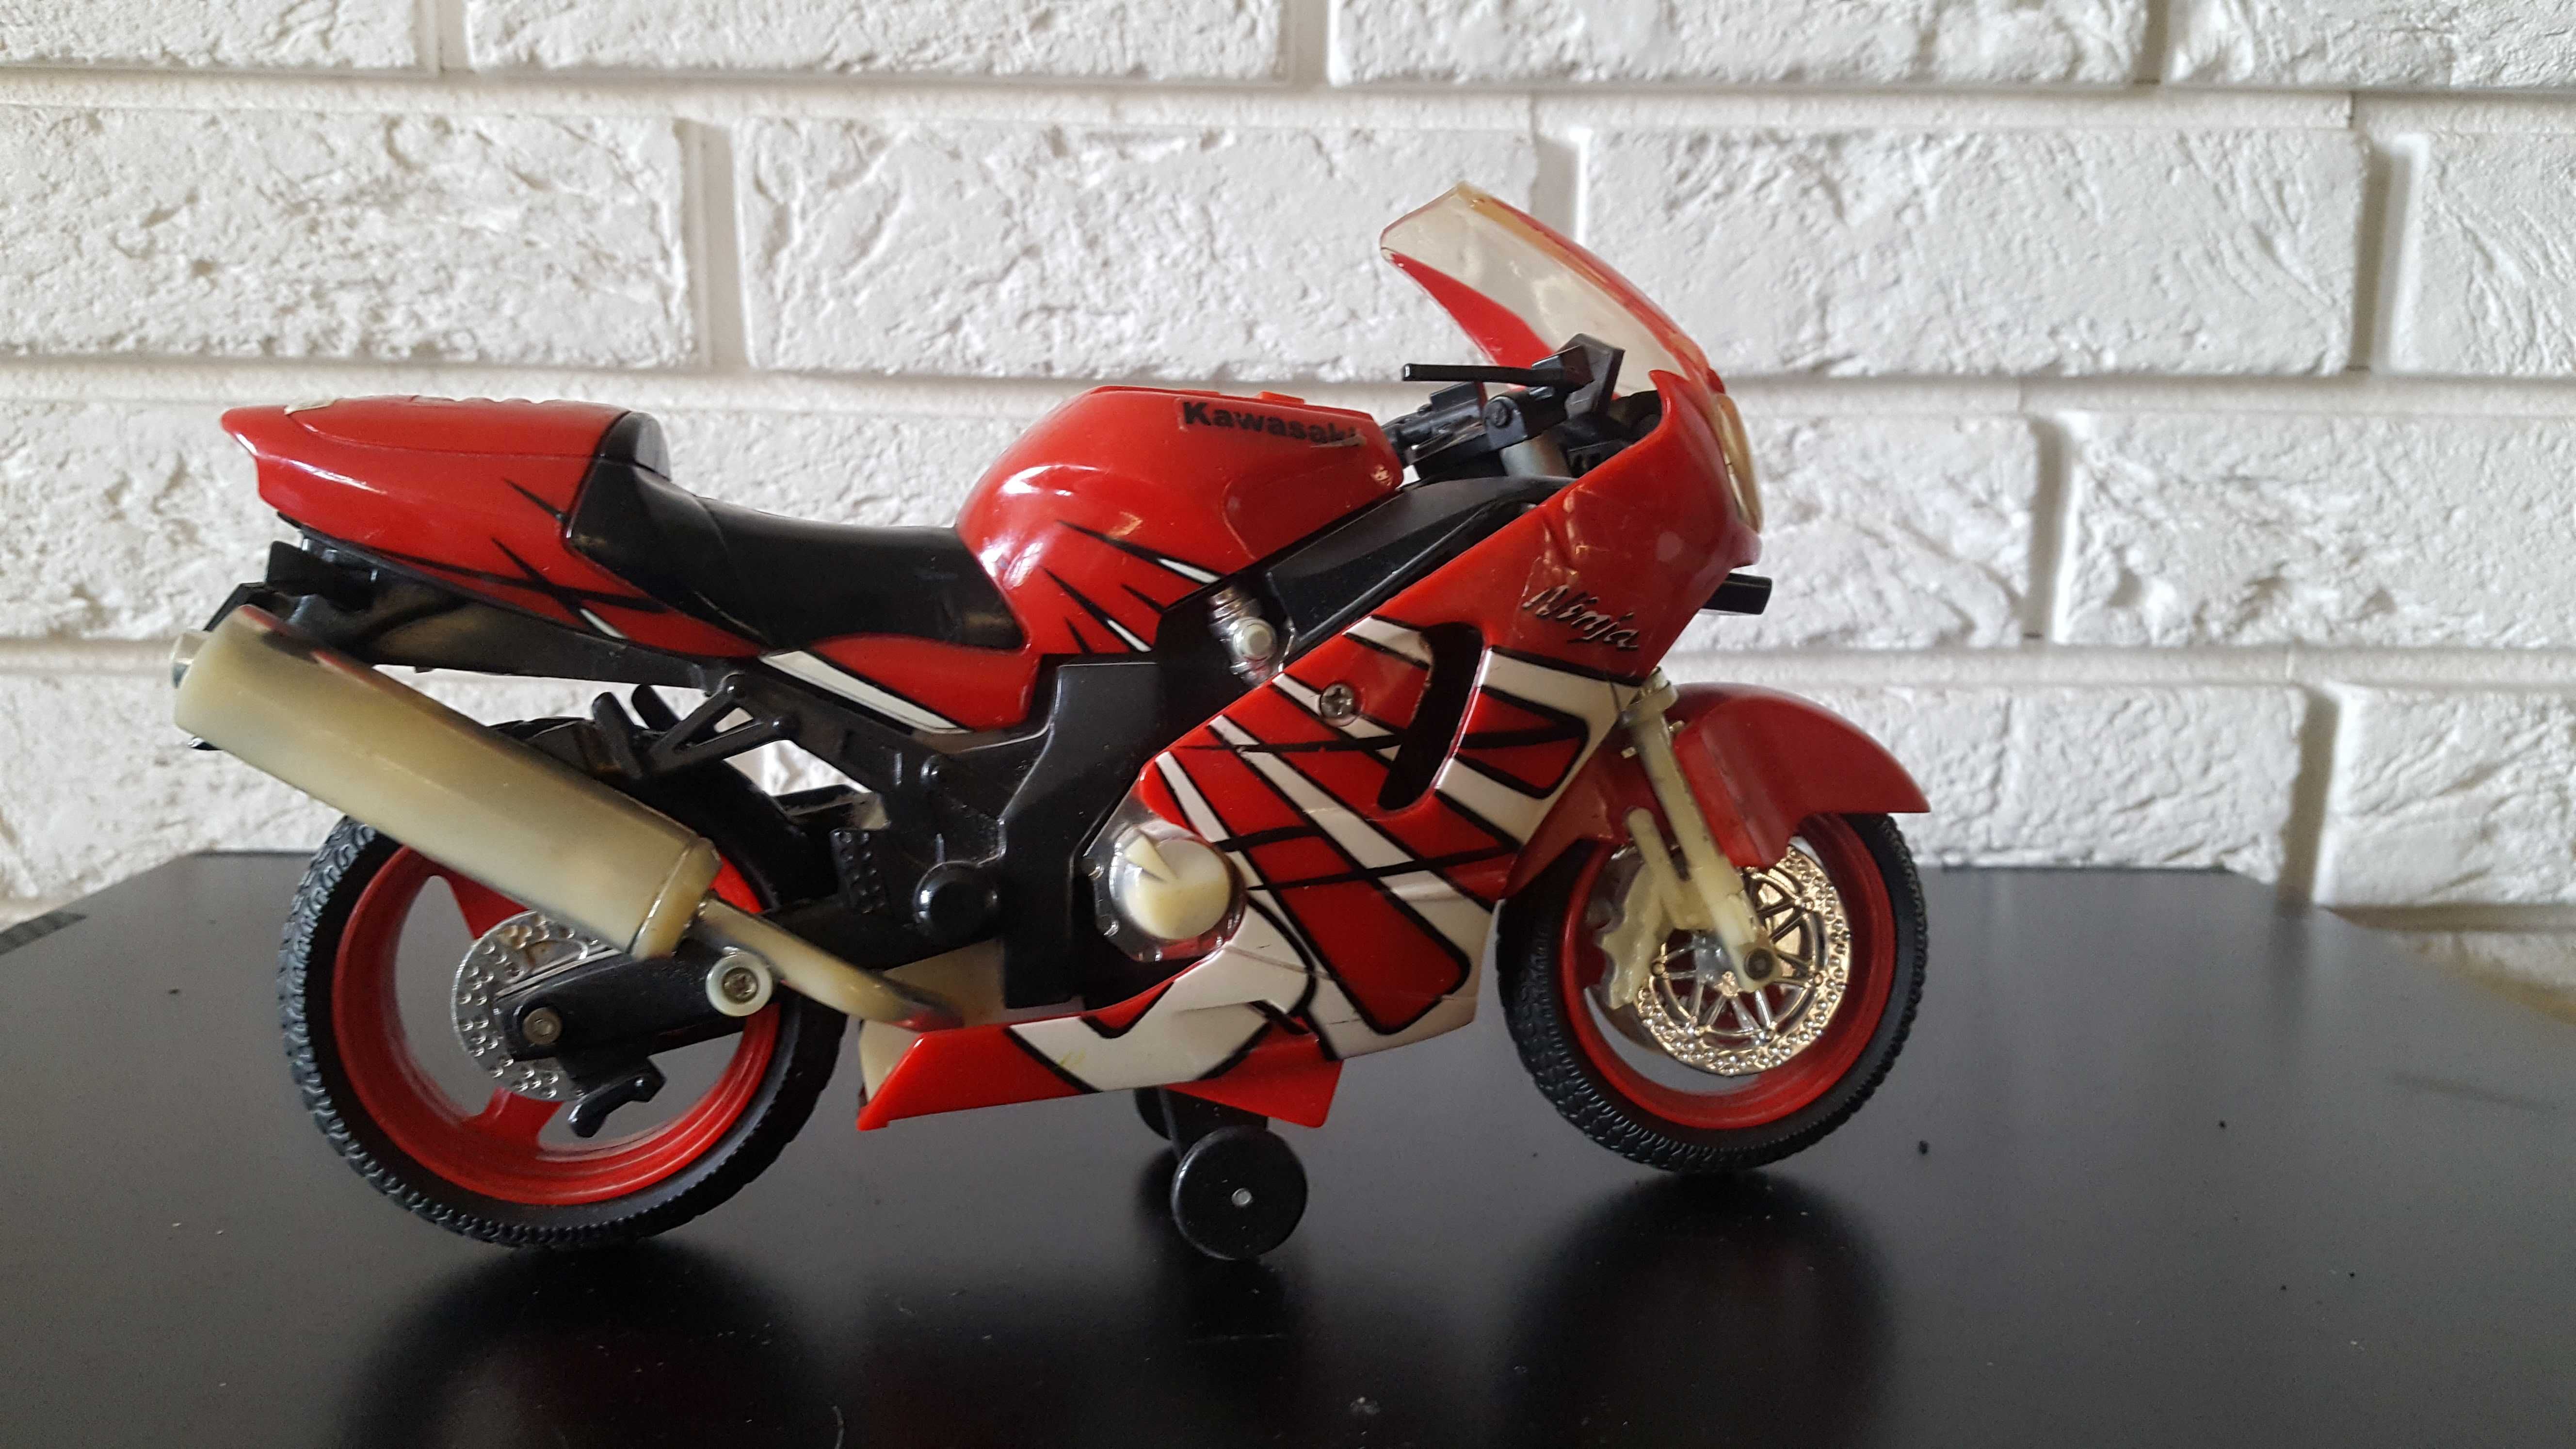 Motocykl Kawasaki na baterie